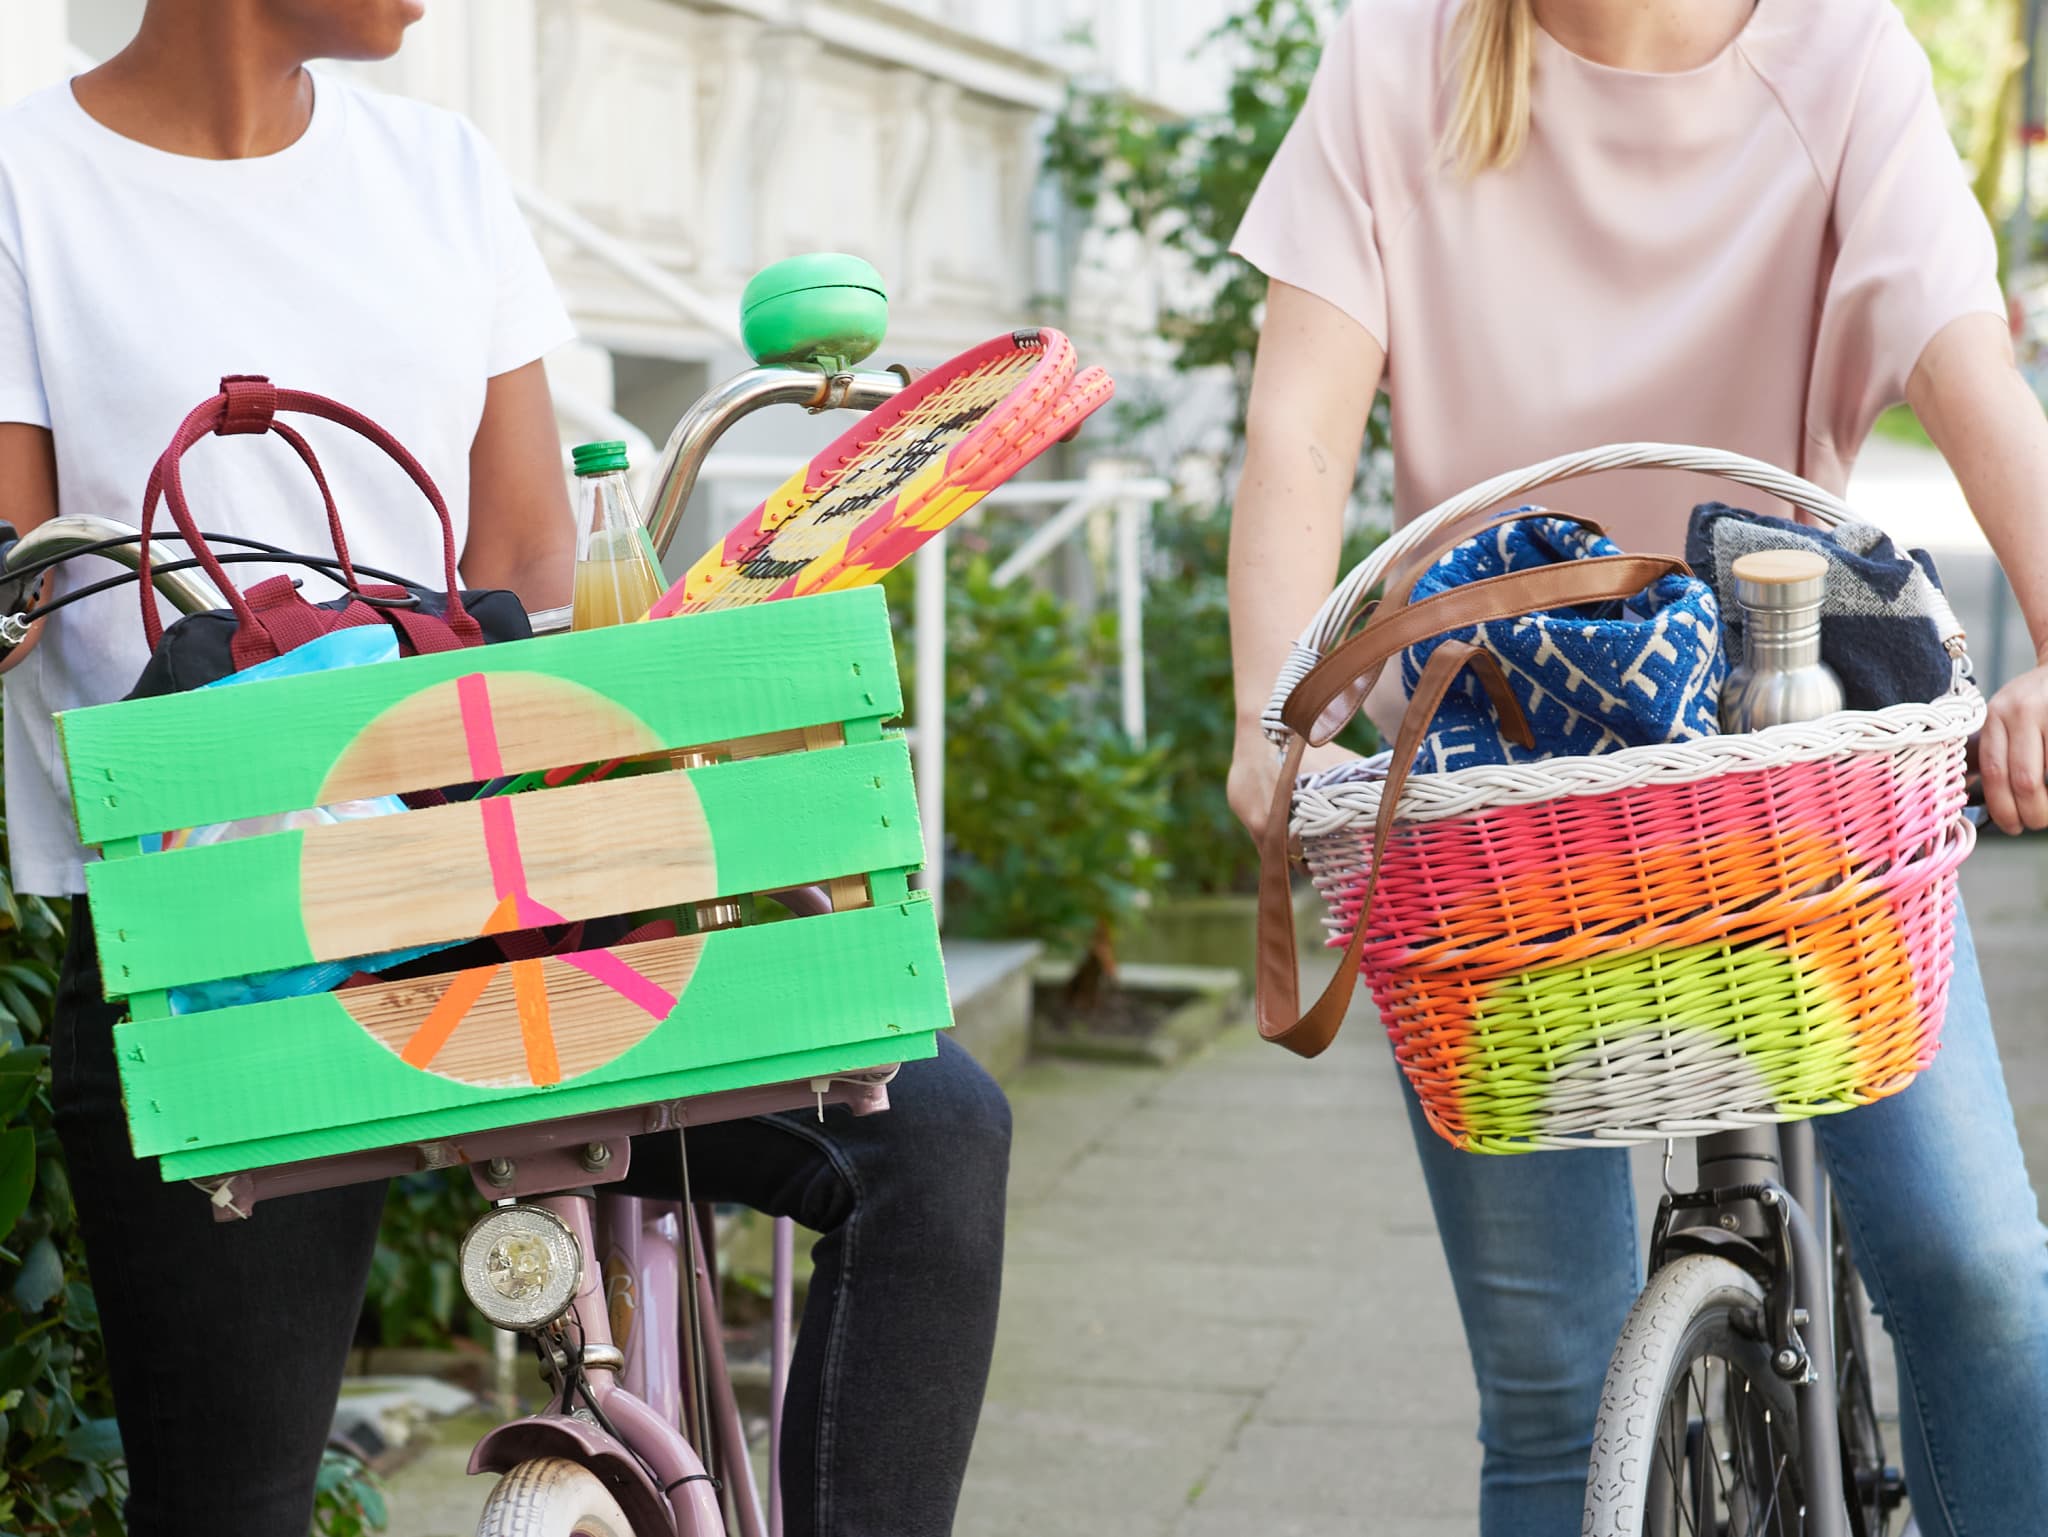 Zwei Personen auf Fahrrädern mit farbenfrohen edding 5200 Permanentspray Acryllack Neon und kräftigen Farben-Vorderradkörben genießen einen Tag im Freien.